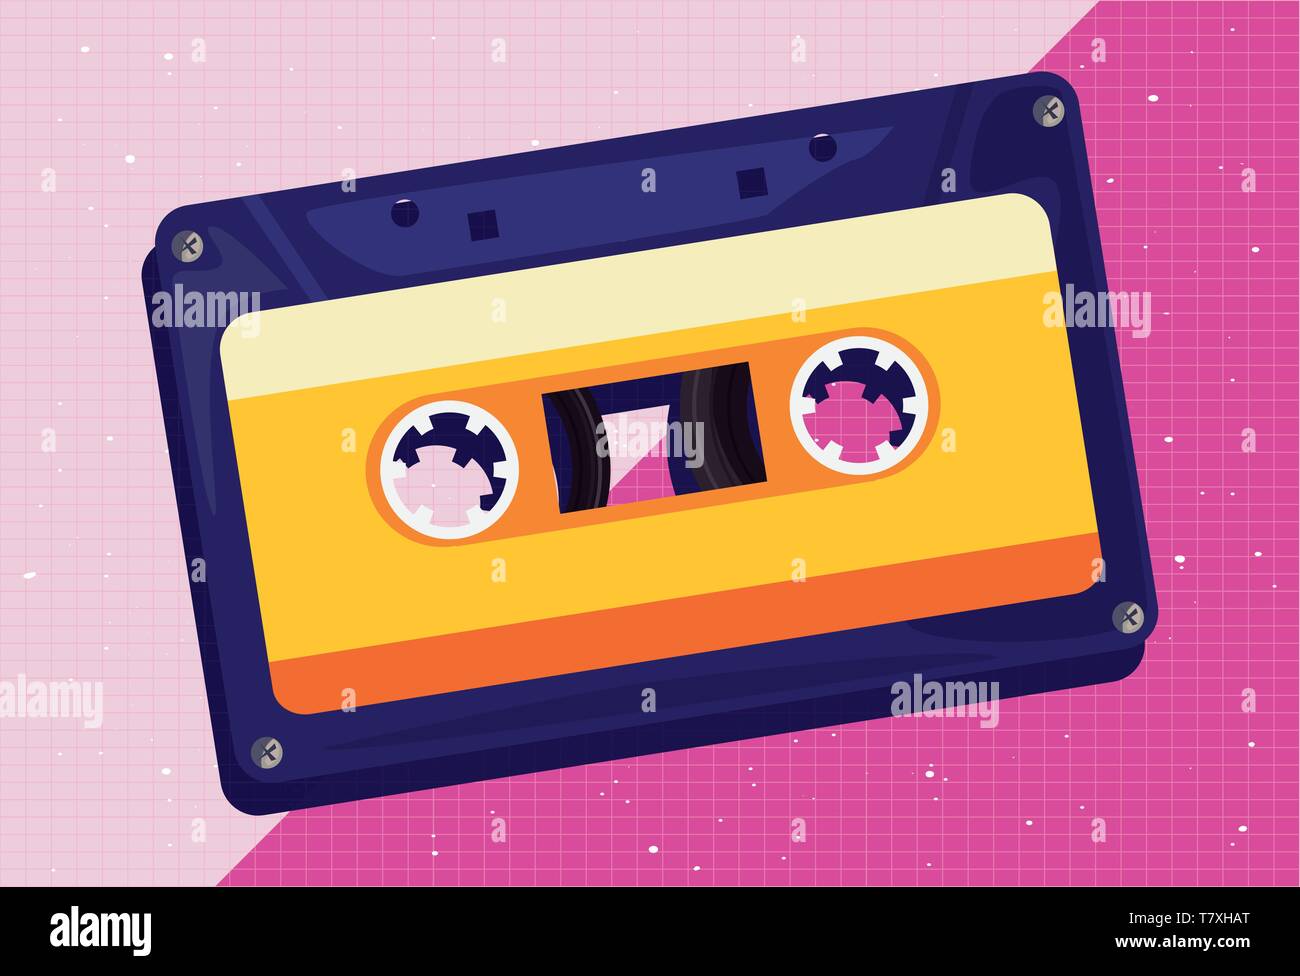 cassette tape music retro 80s style vector illustration Stock Vector ...